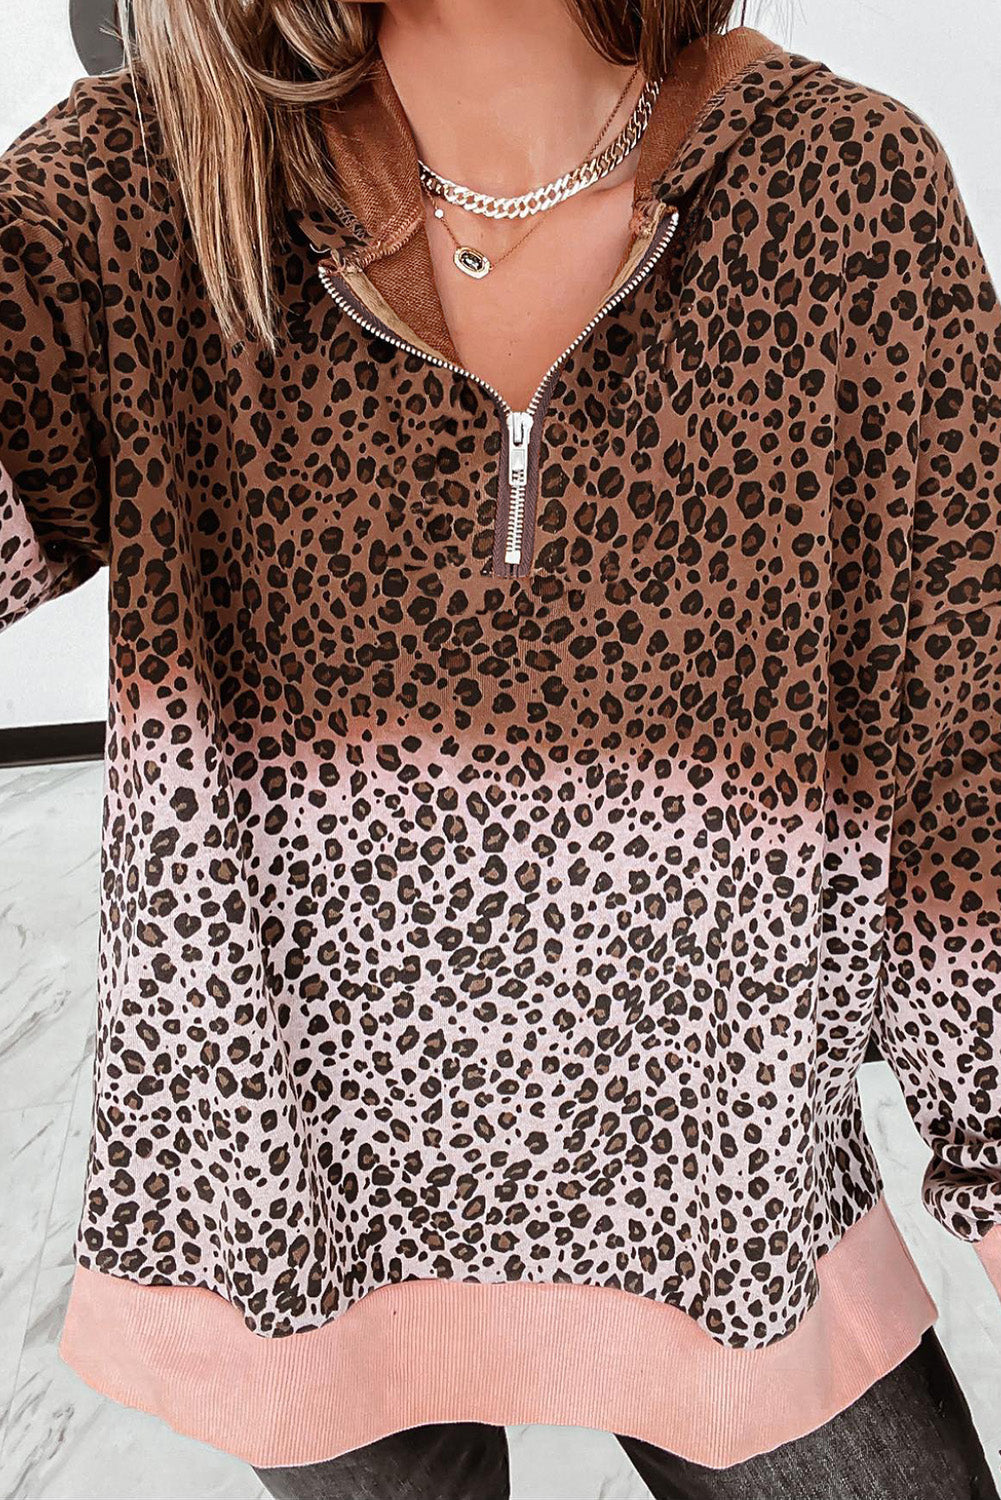 Leopard Leopard Half Zip Hooded Sweatshirt